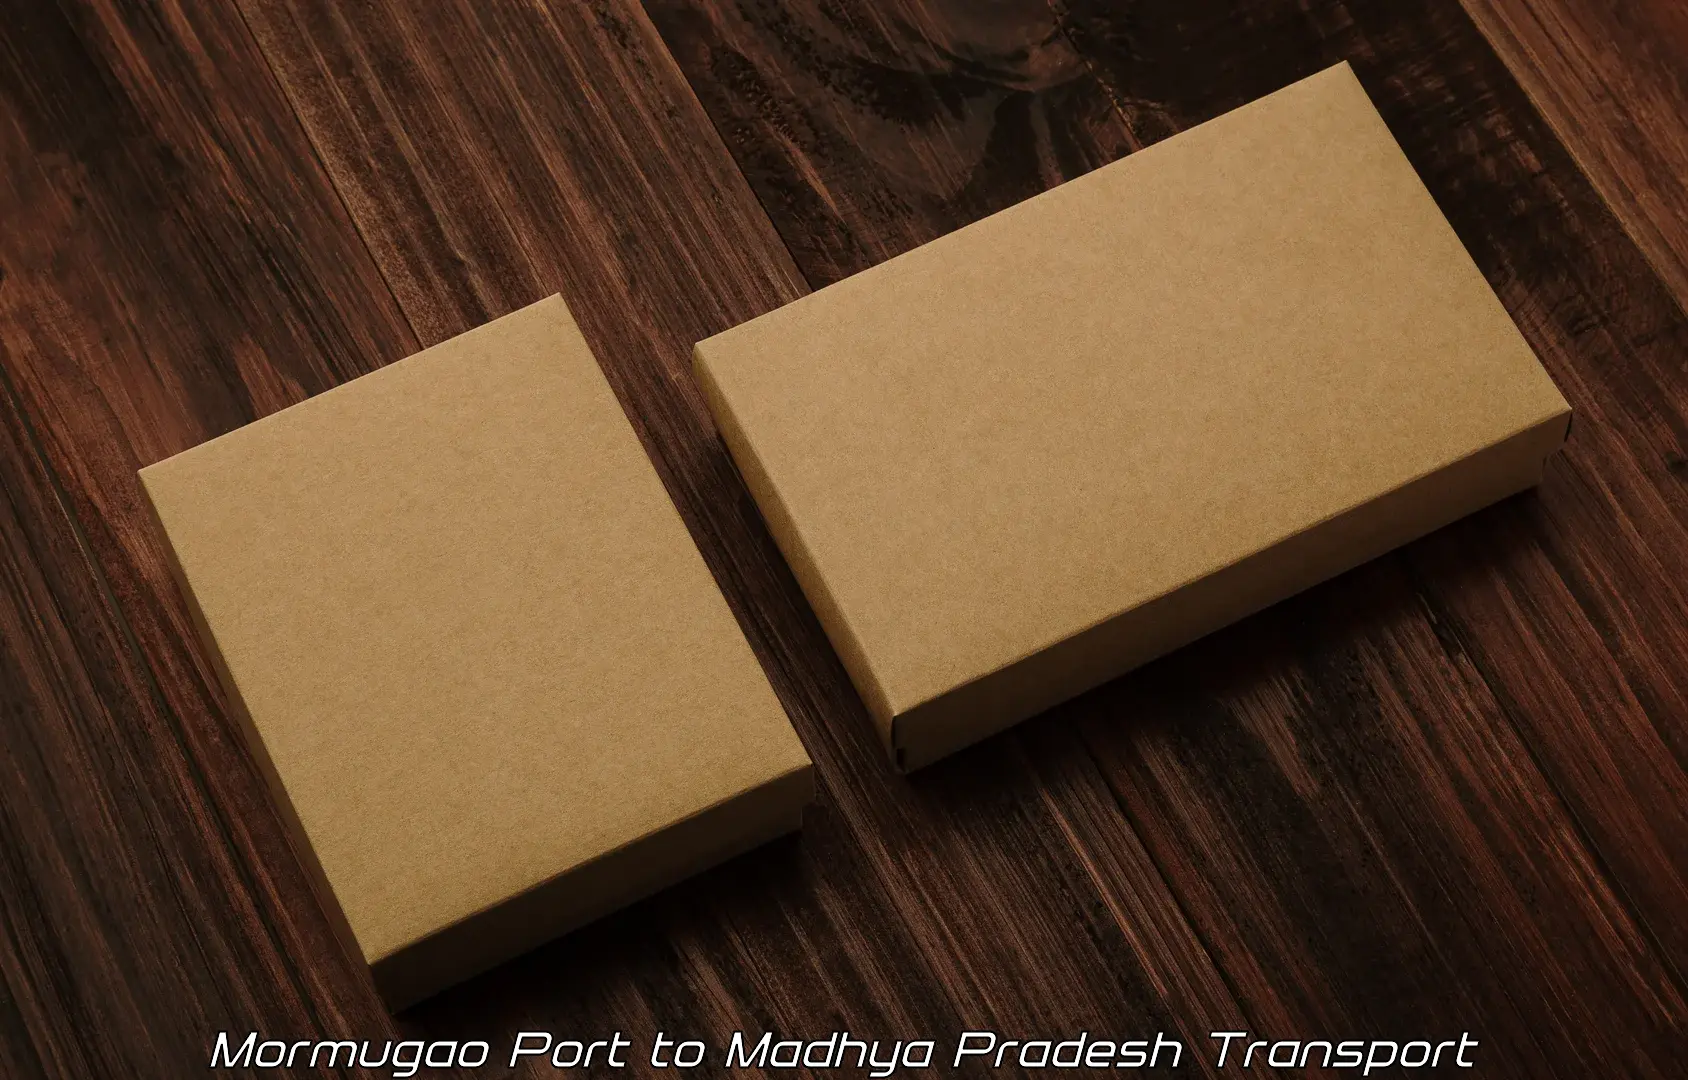 Daily parcel service transport Mormugao Port to Narsinghpur